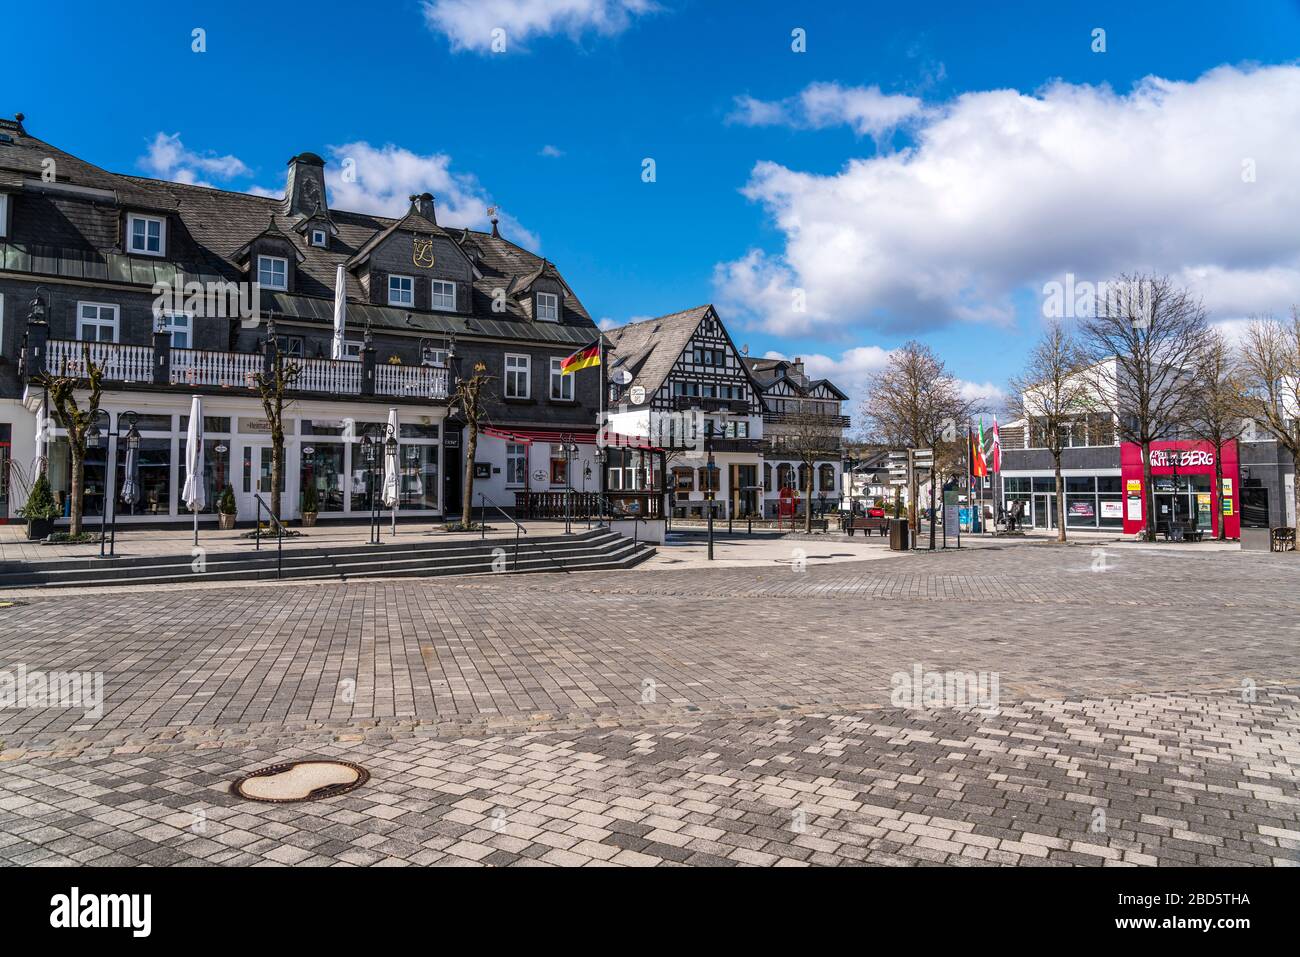 Der menschenleere Marktplatz in Winterberg, Sauerland, Nordrhein-Westfalen, Deutschland | la piazza deserted del mercato in Winterberg, Sauerland, No Foto Stock